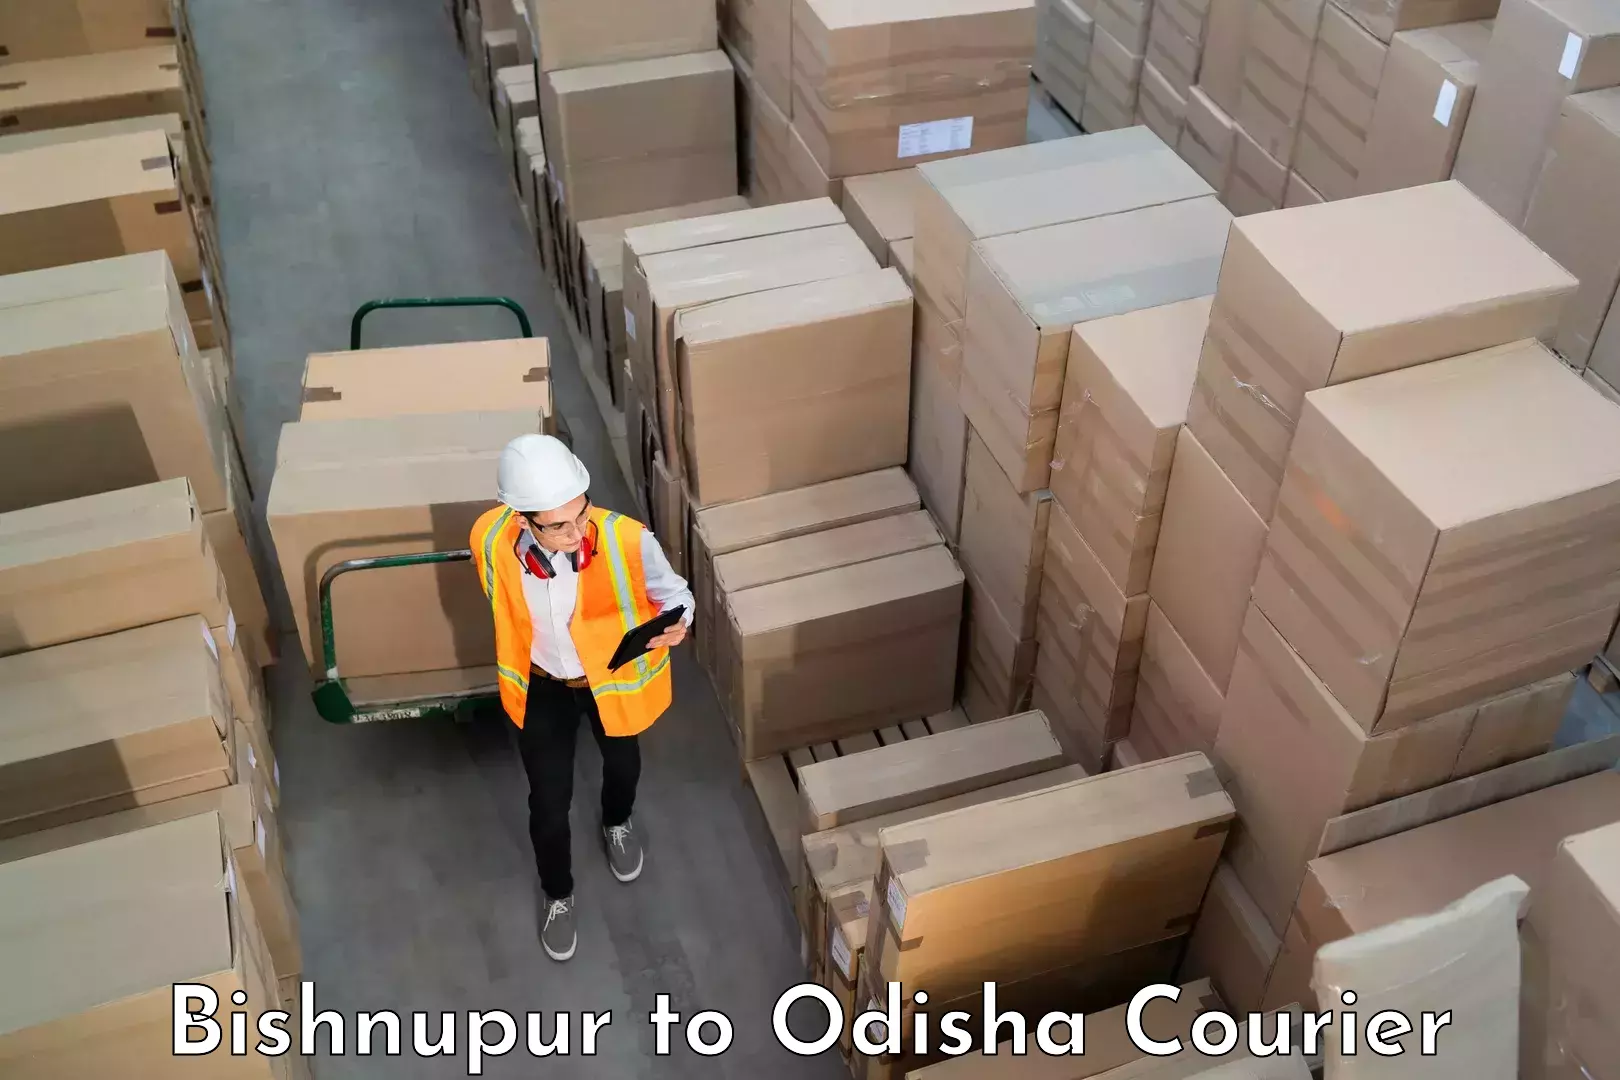 Baggage shipping experts Bishnupur to Babujang